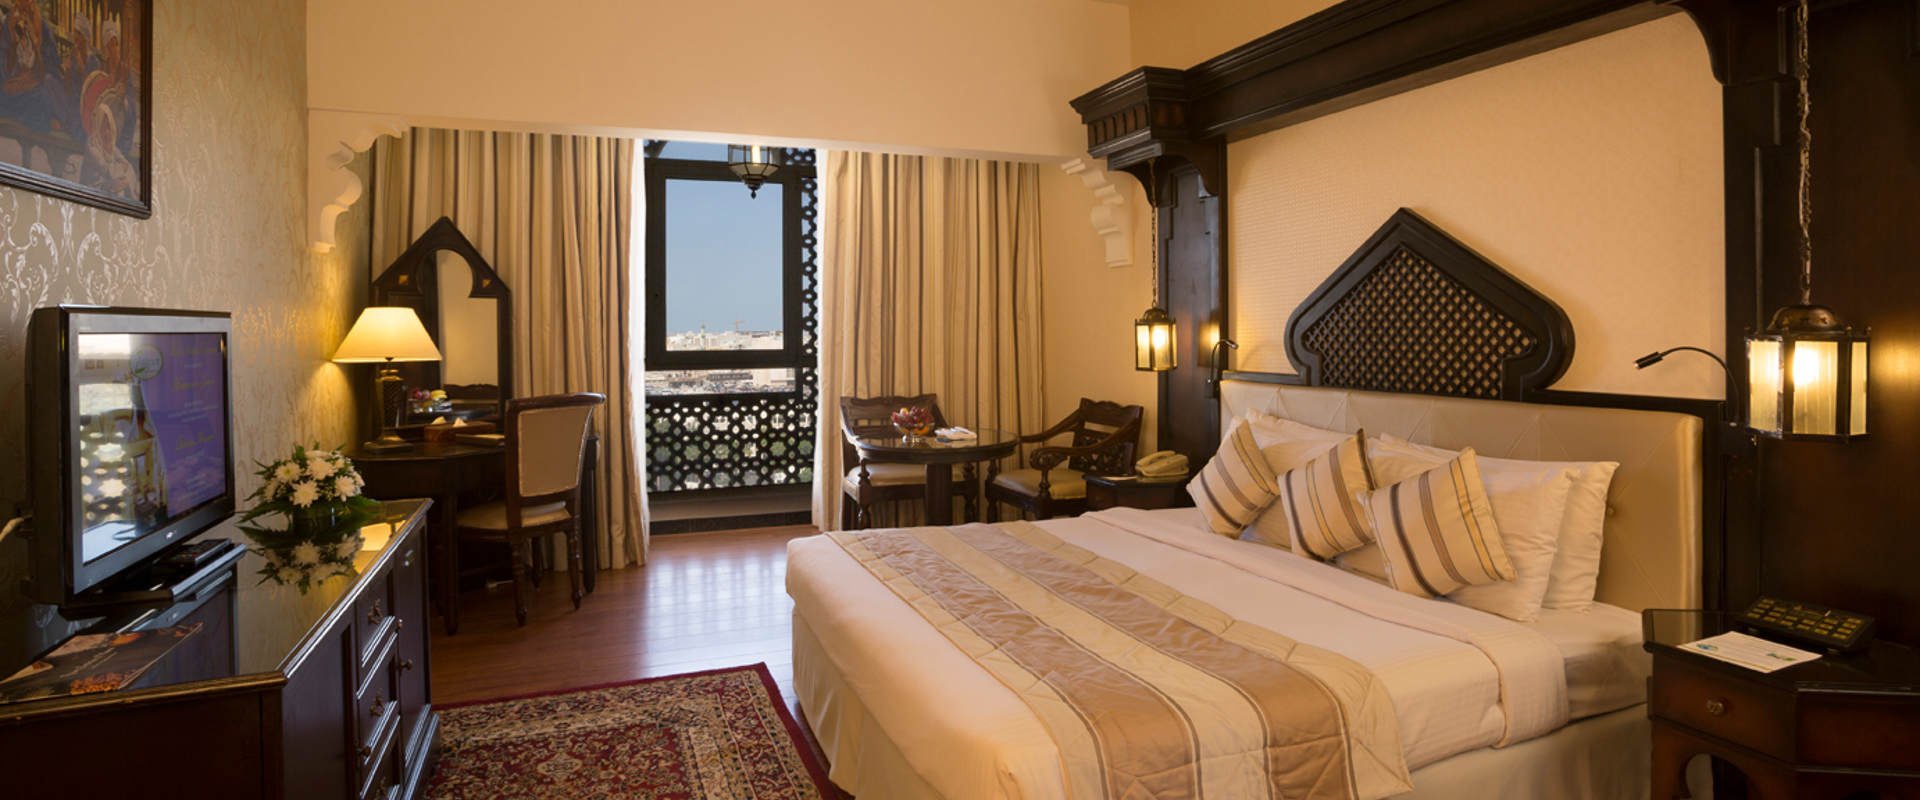 المكان المثالي لمشاركتها مع العائلة فندق اريبيان كورتيارد فندق وسبا بر دبي